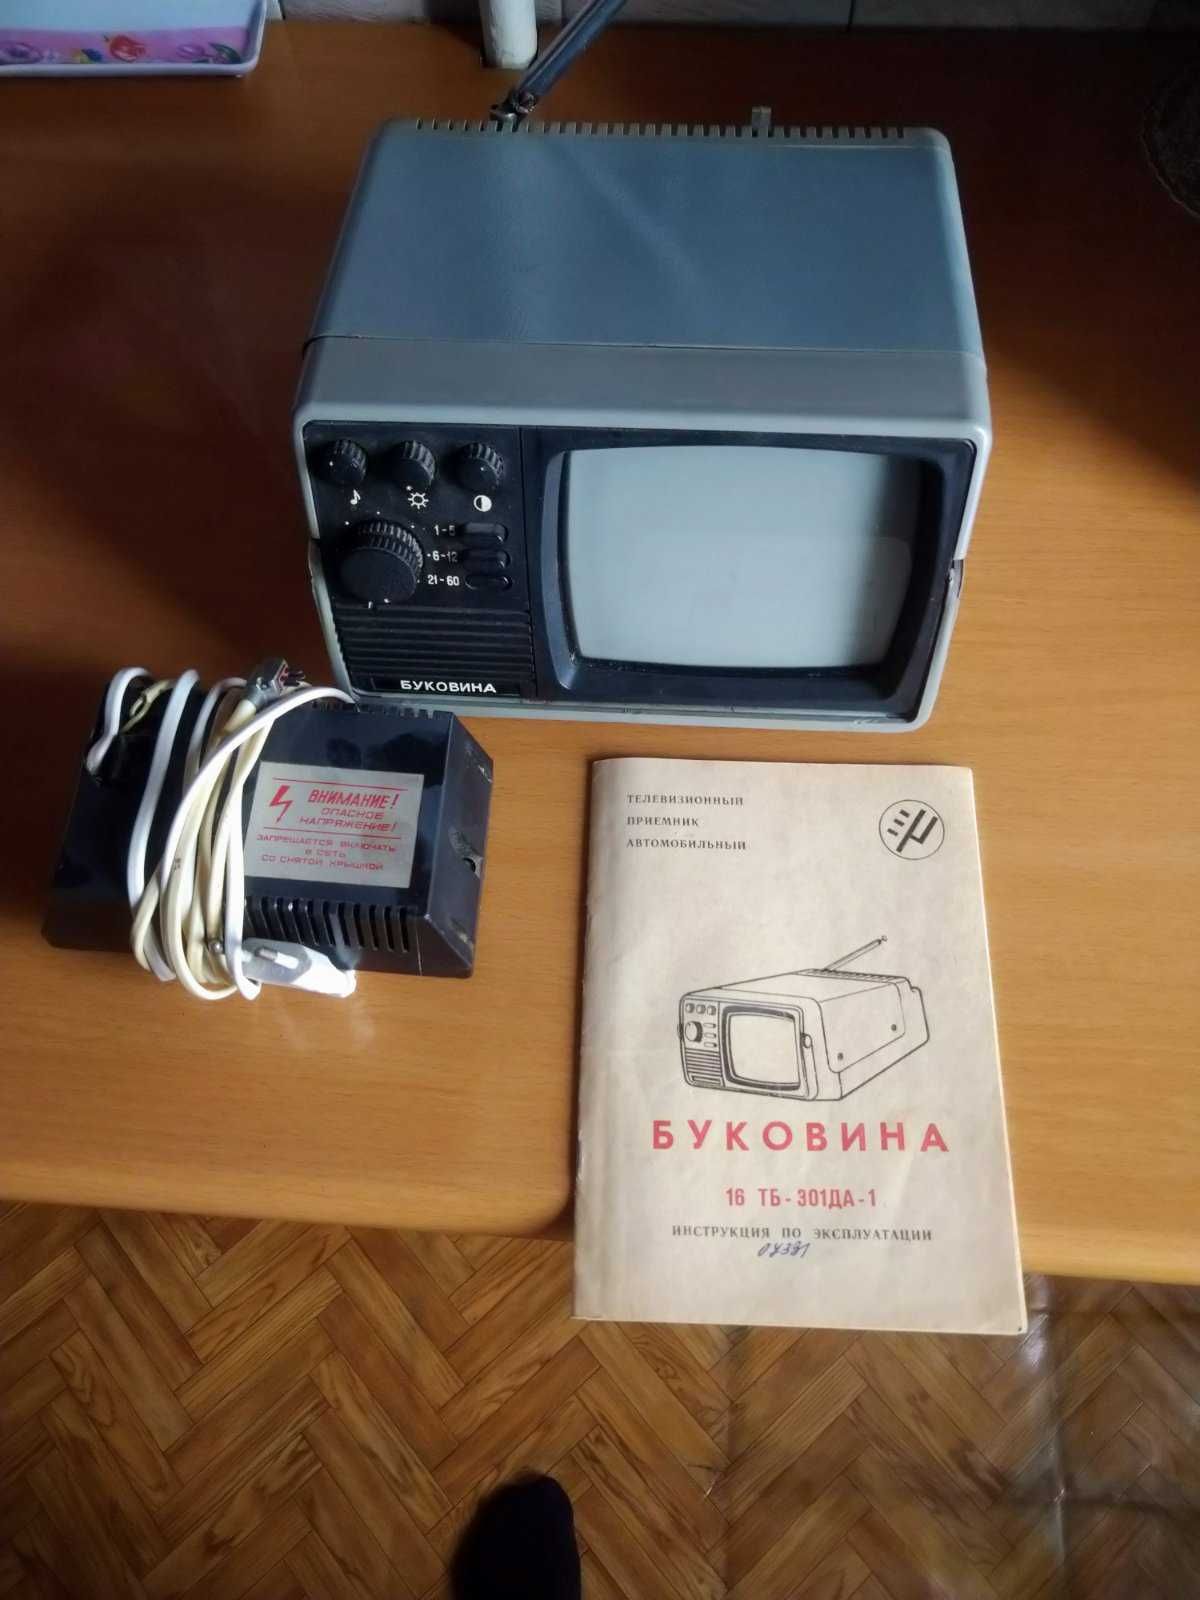 Телевизор Буковина 16 ТБ-301ДА-1 + кинескоп 16ЛК8Б